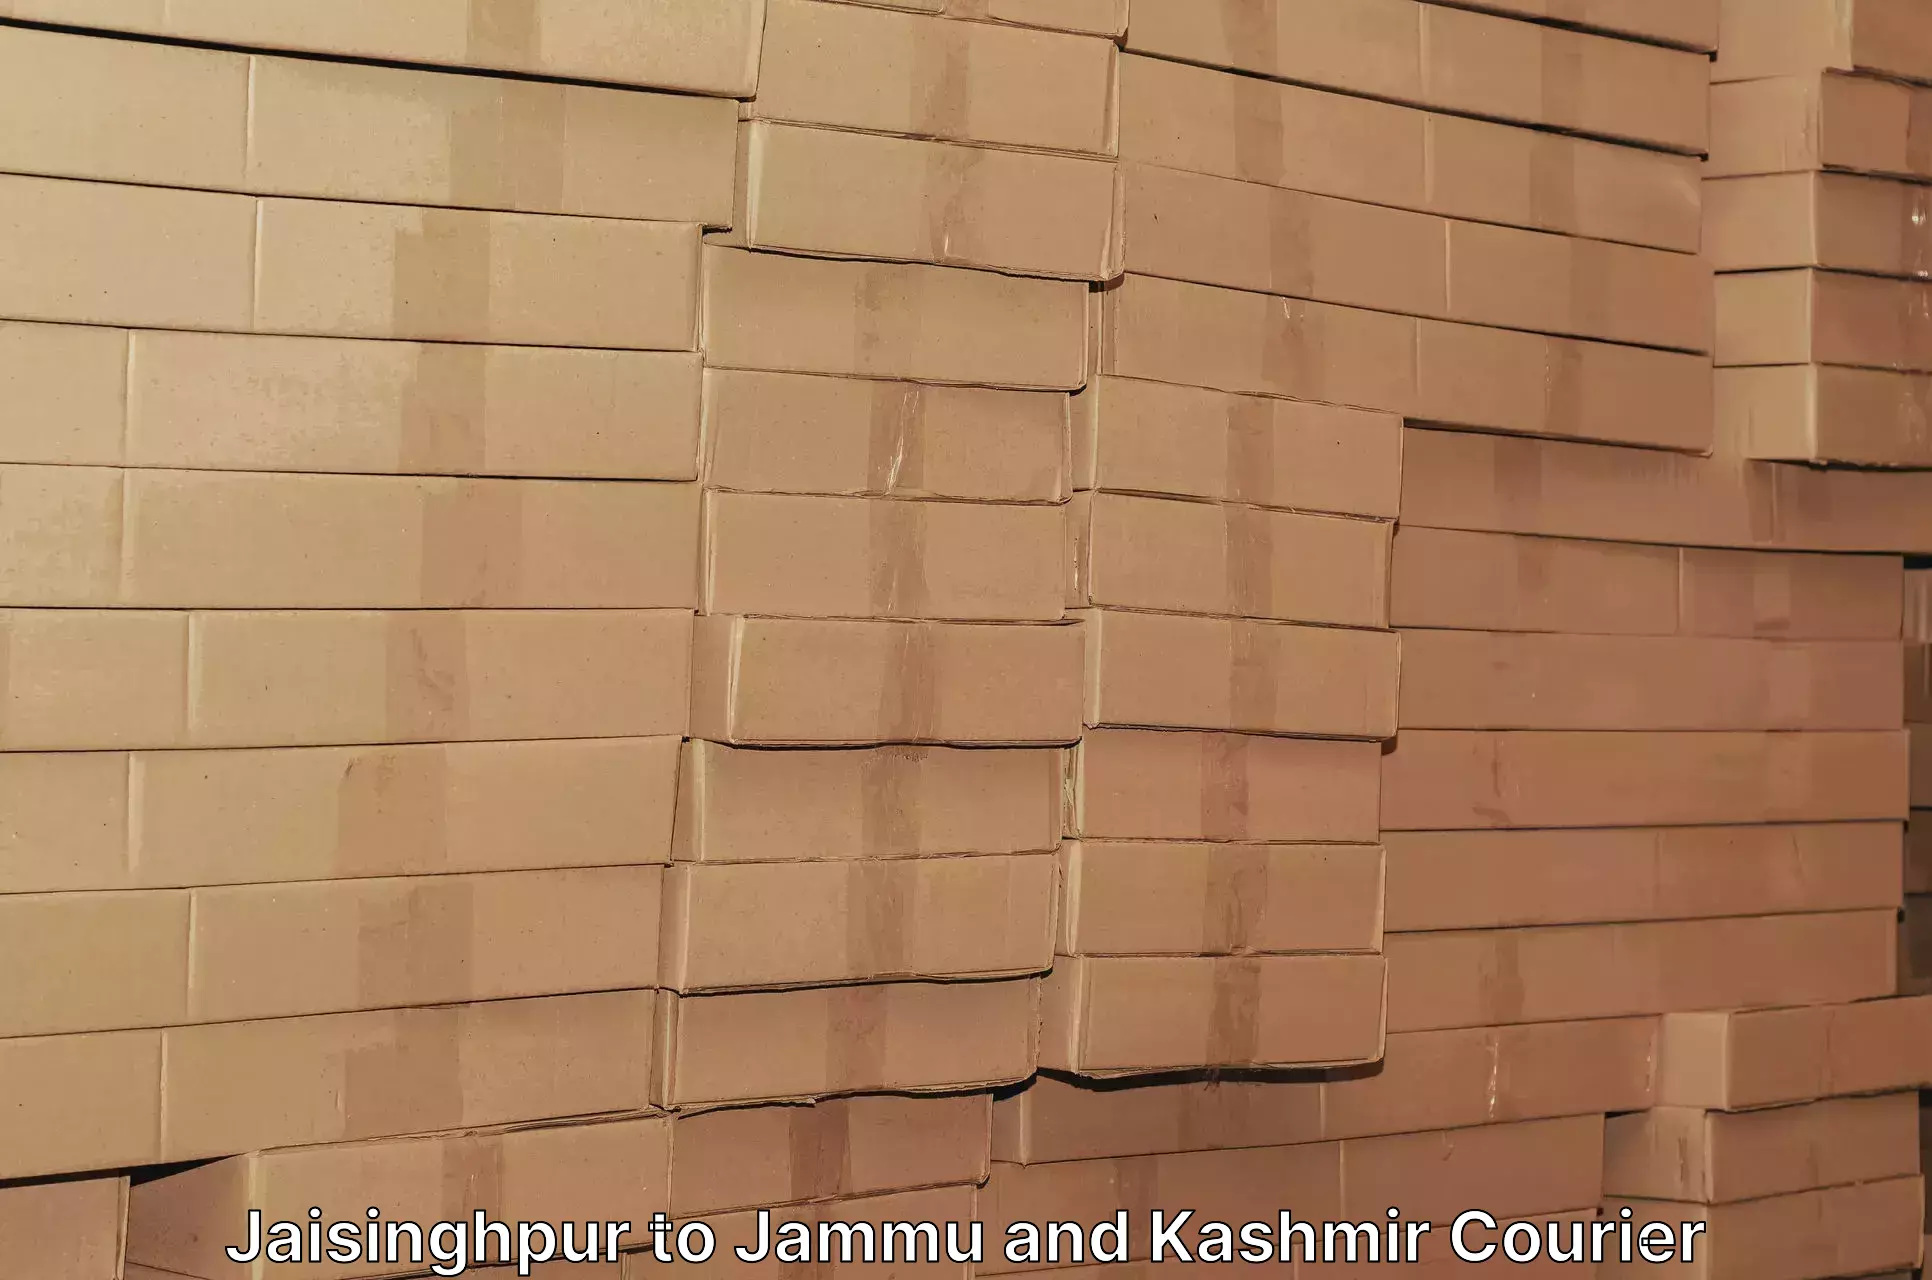 High-capacity parcel service Jaisinghpur to Pulwama